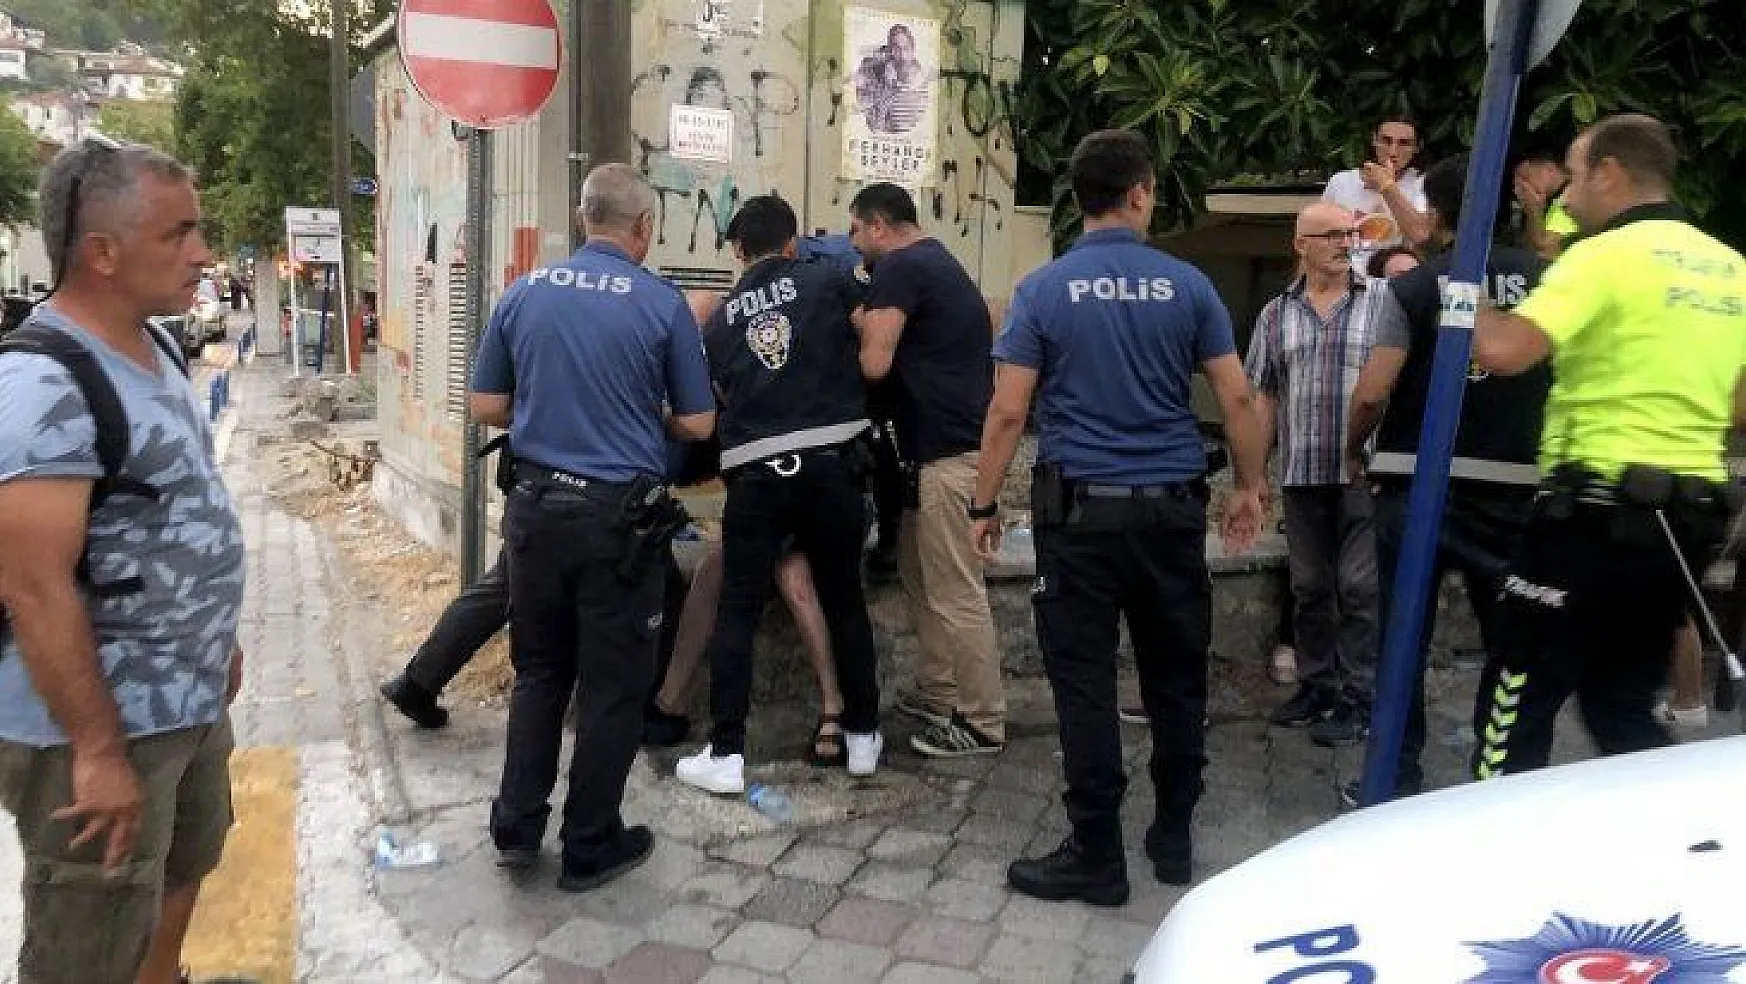 Denizlispor Başkanı Ali Çetin ve polislerin arbedesinde iddianame hazırlandı